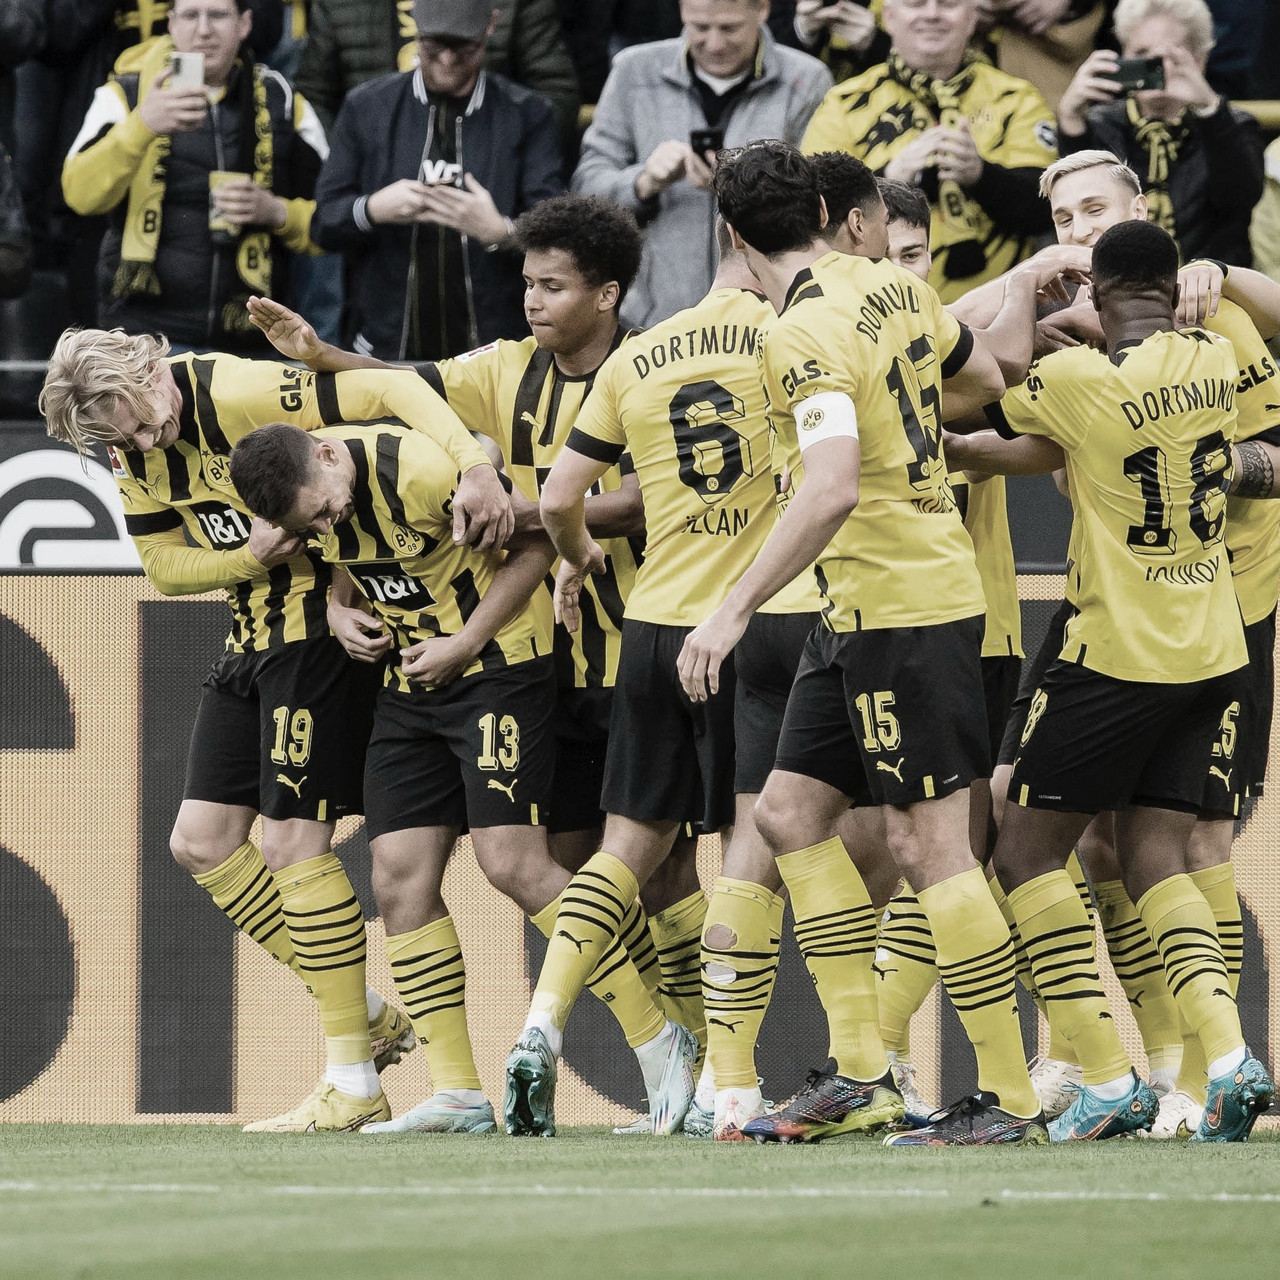 El Dortmund aplastó al Stuttgart